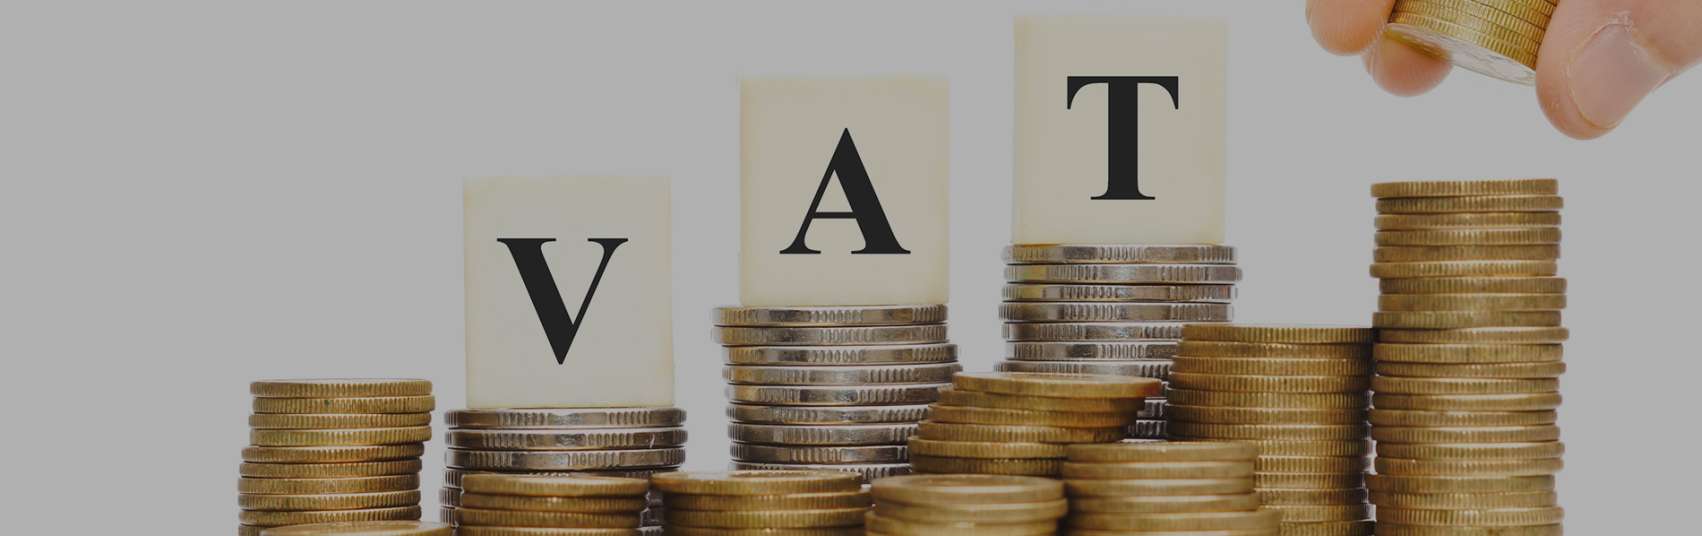 VAT scrabble letters on coins